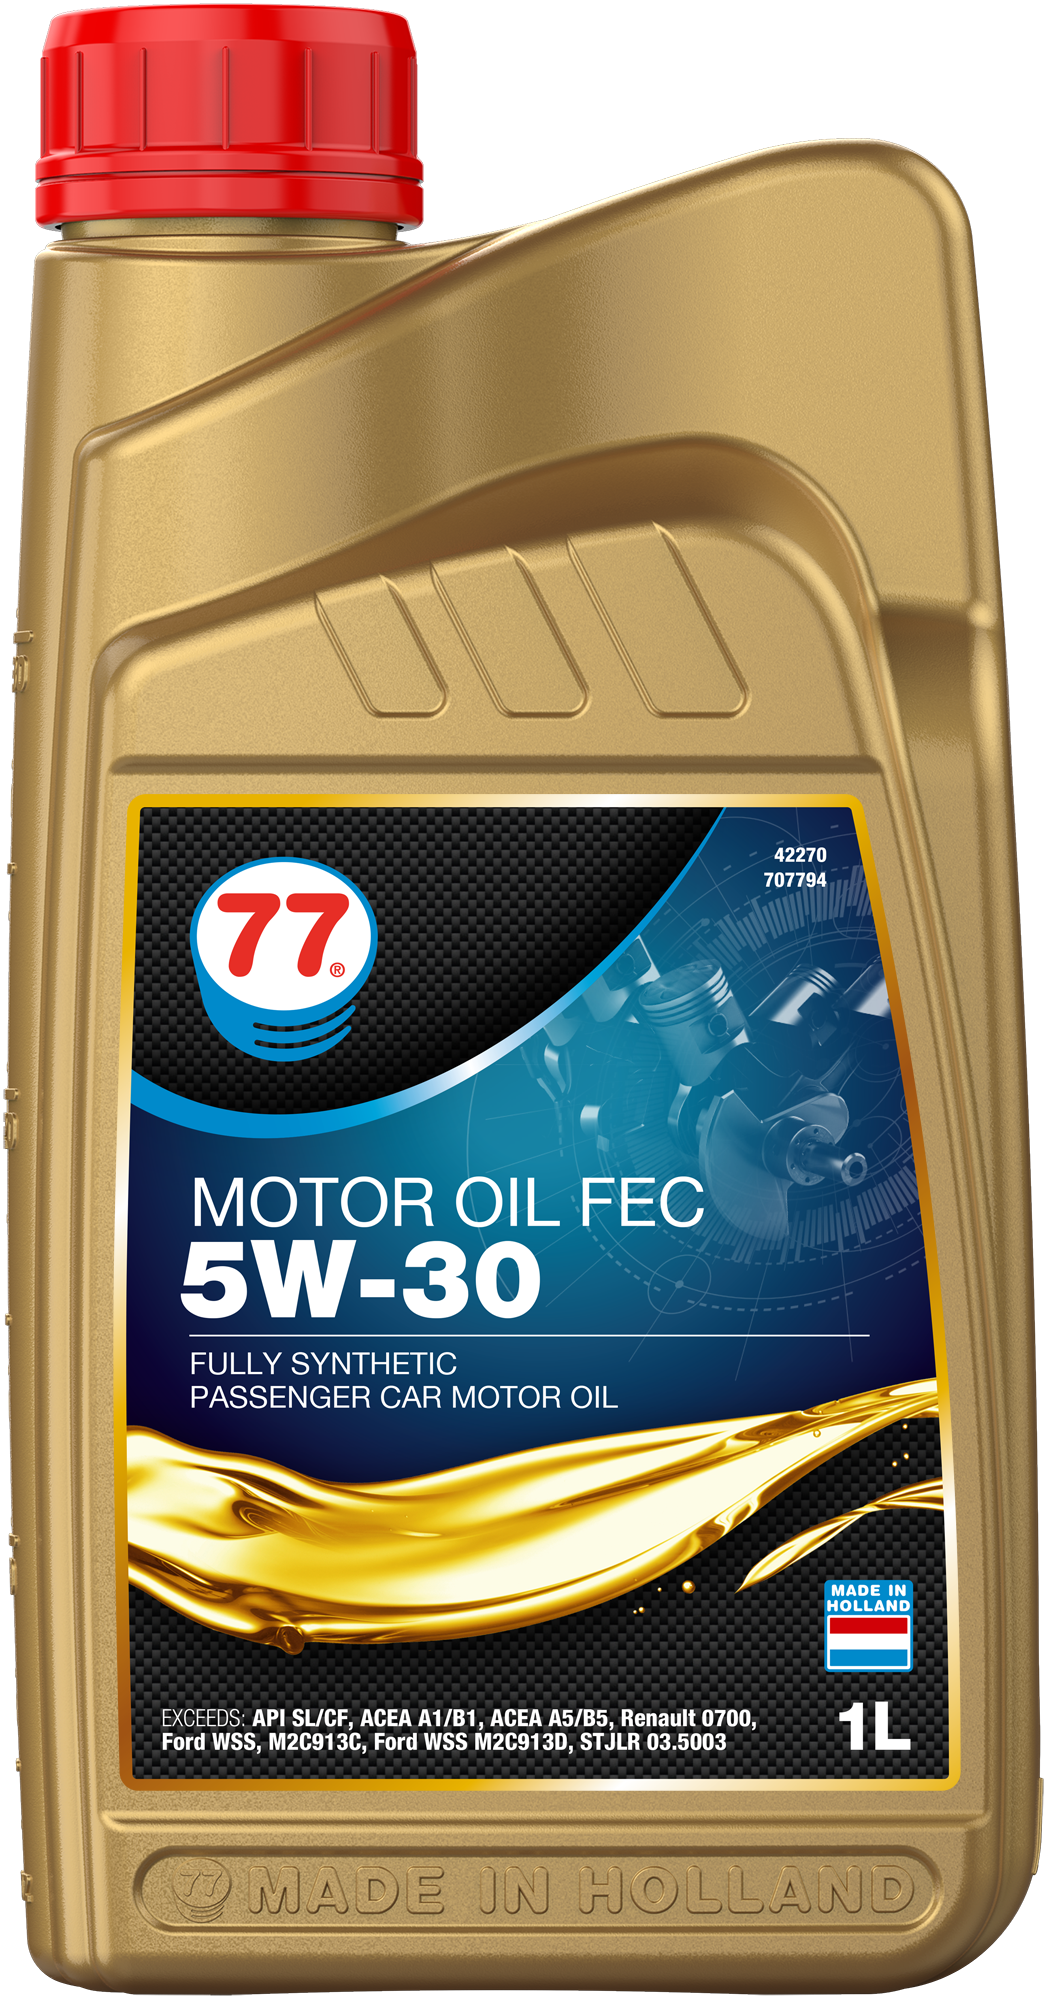 4227-1 Motor Oil FEC 5W-30 van 77 lubricants is een high performance brandstofbesparende olie op basis van 100% synthetische technologie.